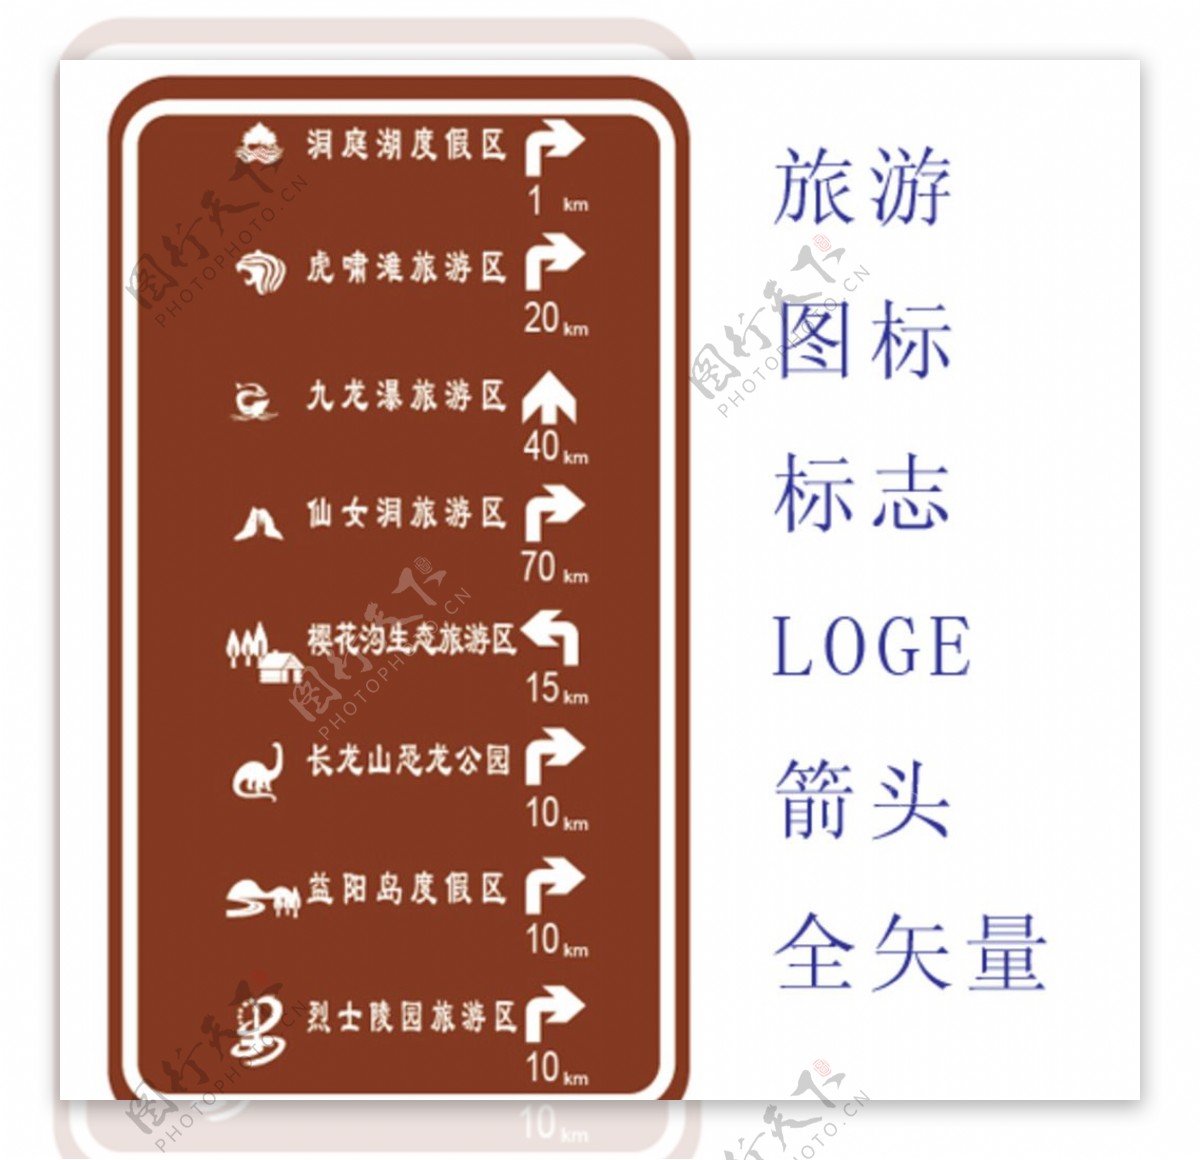 旅游标志LOGE箭头图片